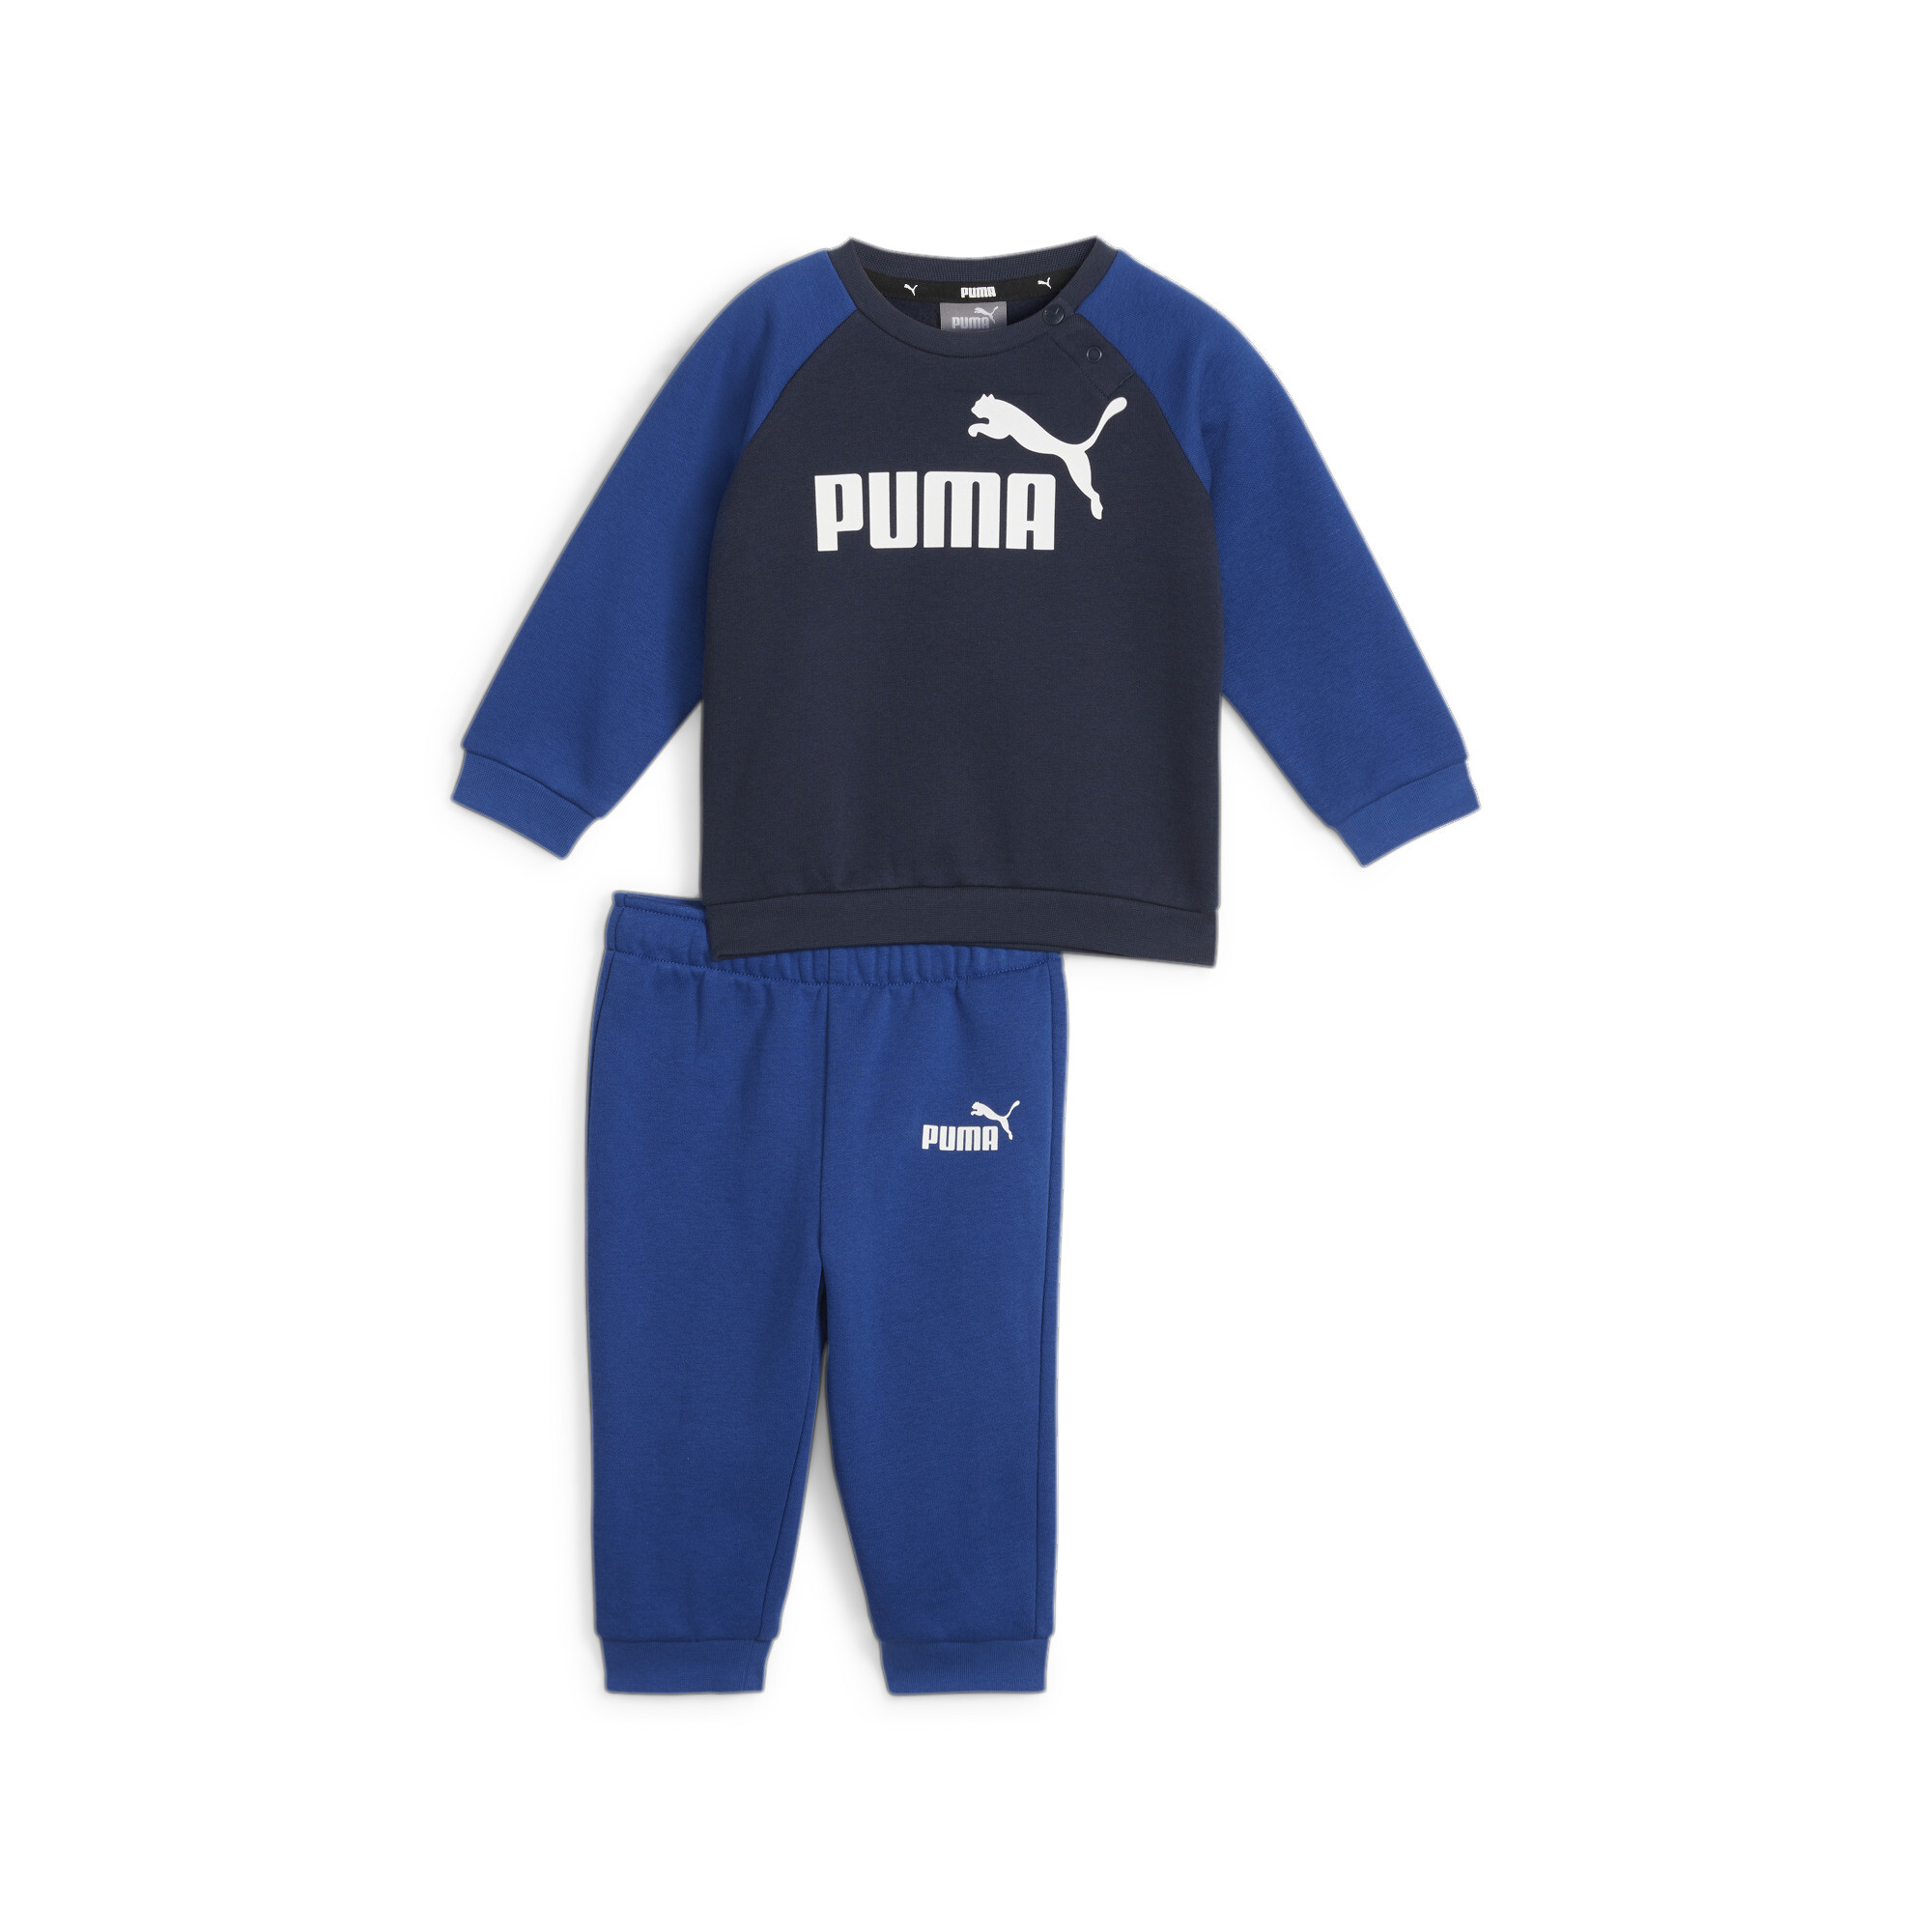 Puma Minicats Essentials Raglan Babies' Jogger Set, Blue, Size 2-4M, Clothing